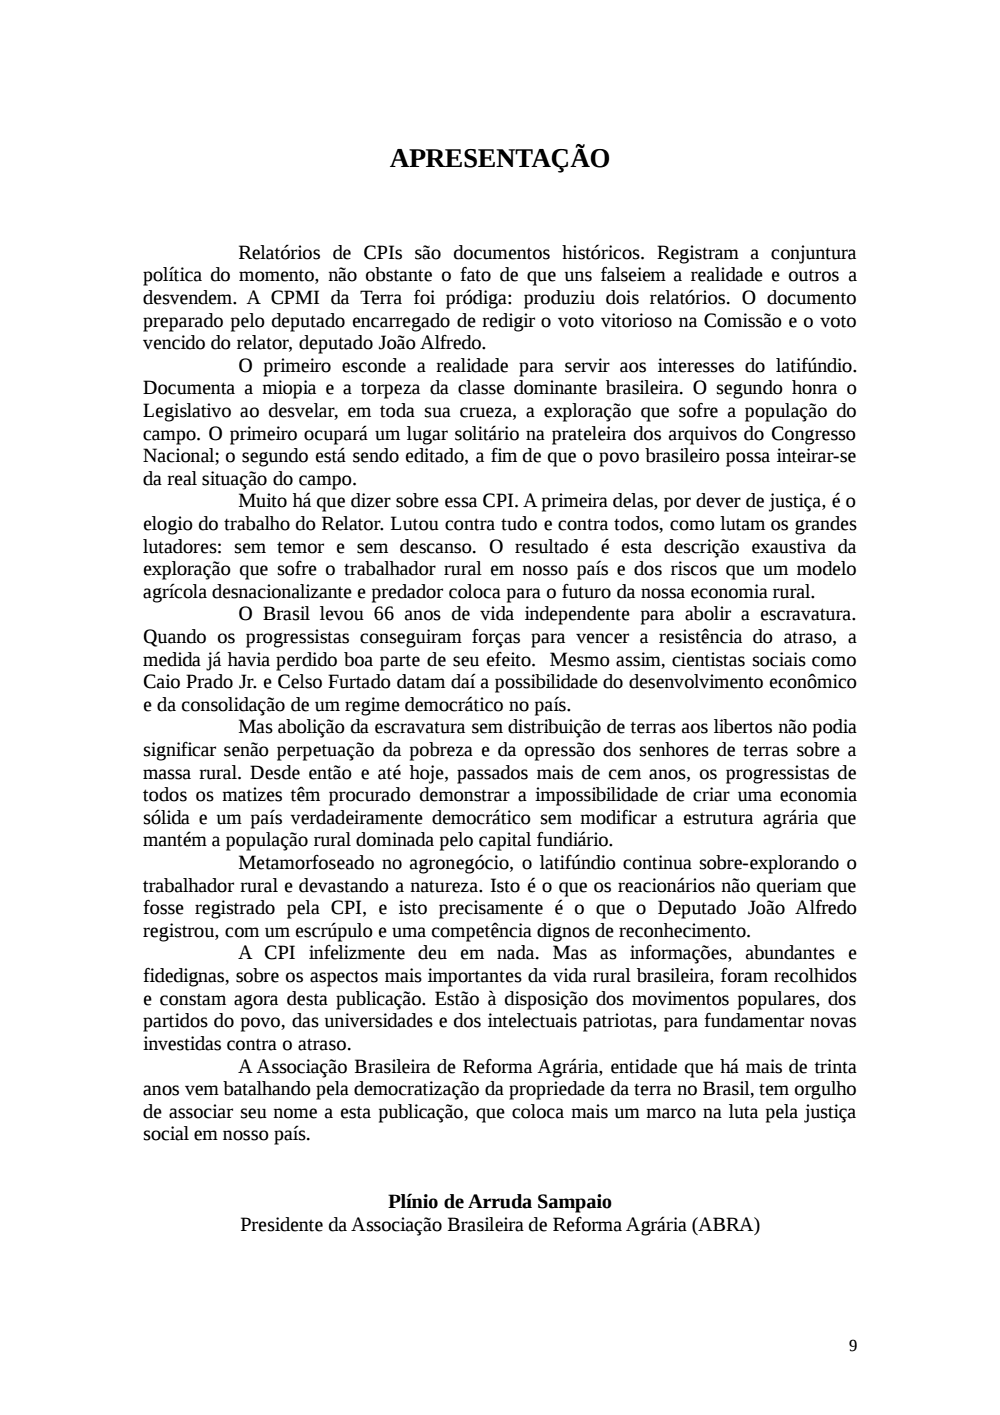 Page 9 from Relatório final da comissão